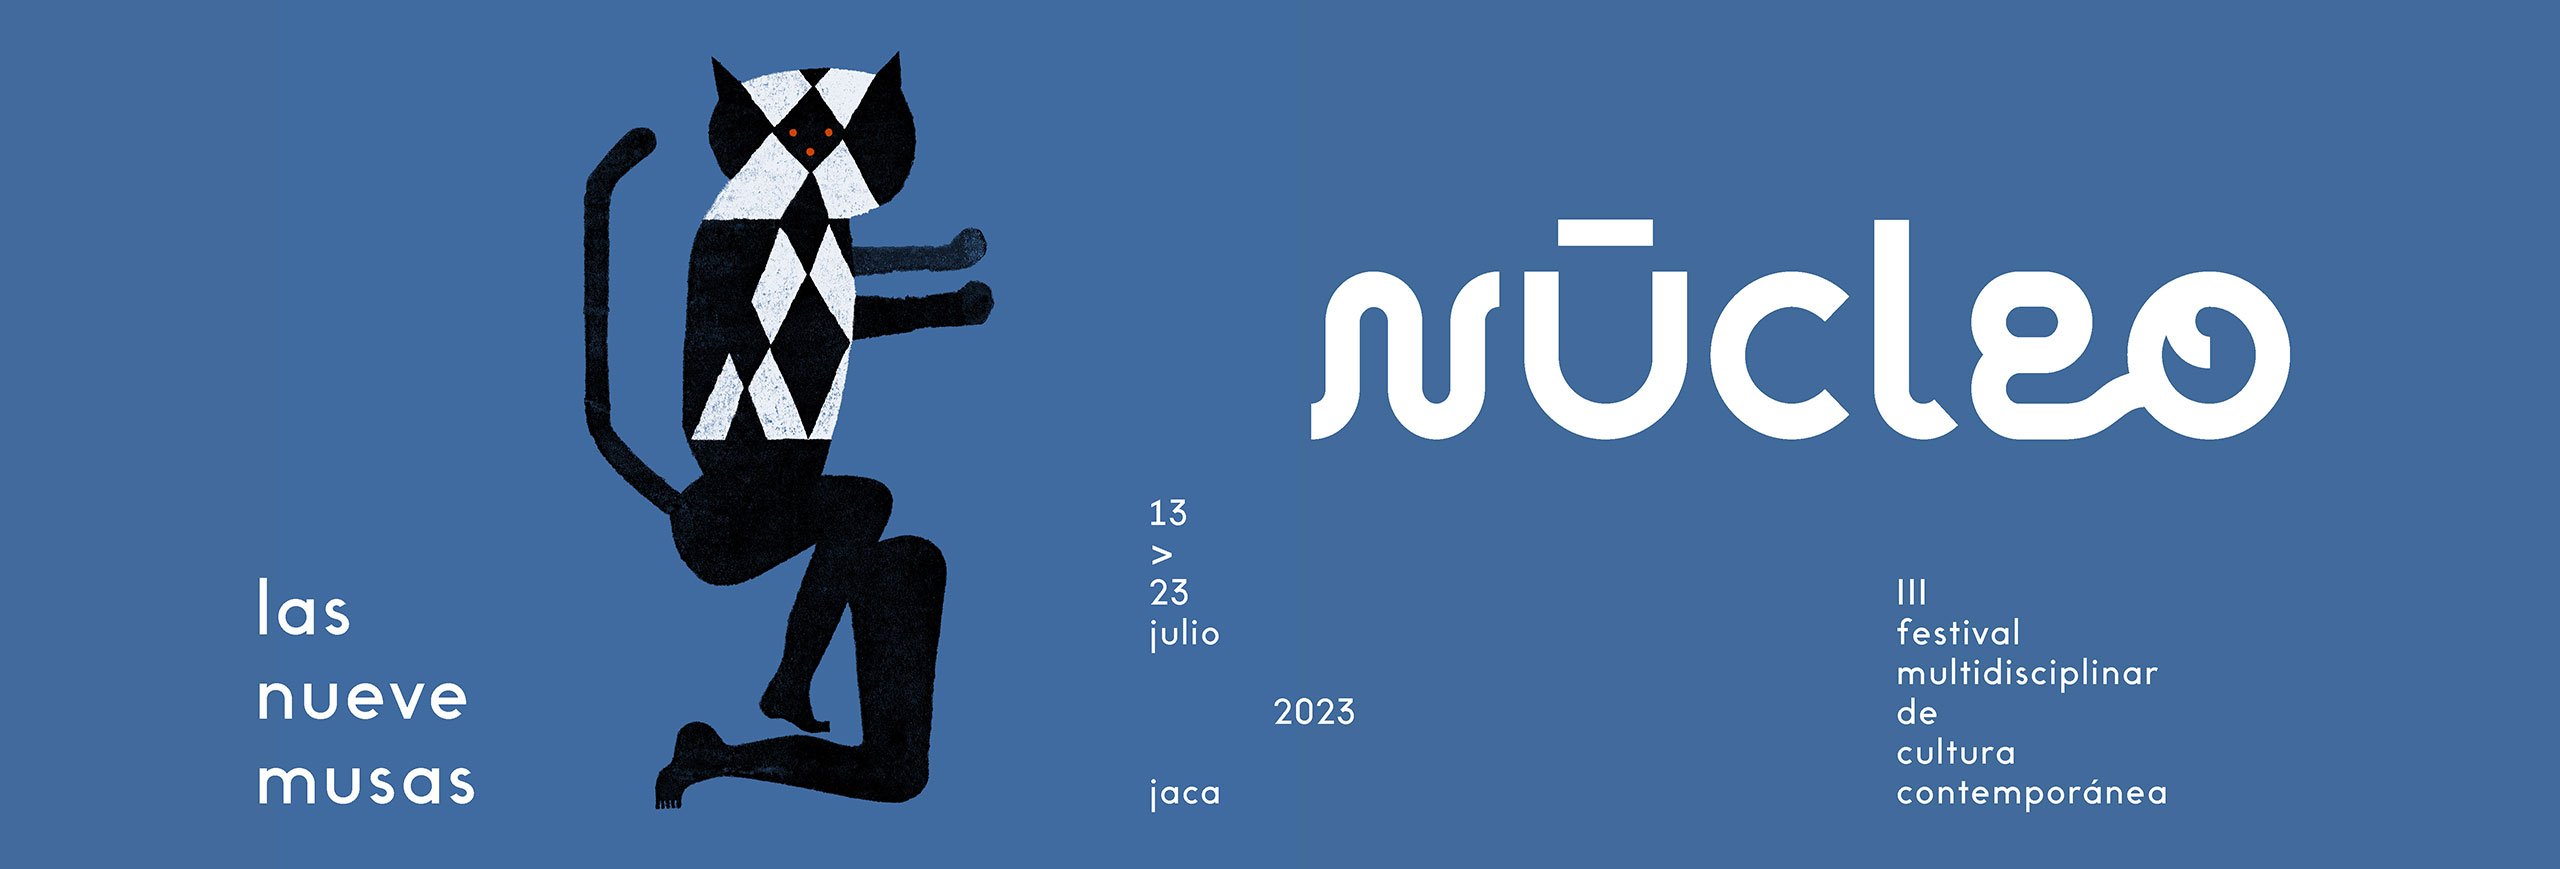 Núcleo 2023- Las nueve musas. Festival multidisciplinar de cultura contemporánea Jaca